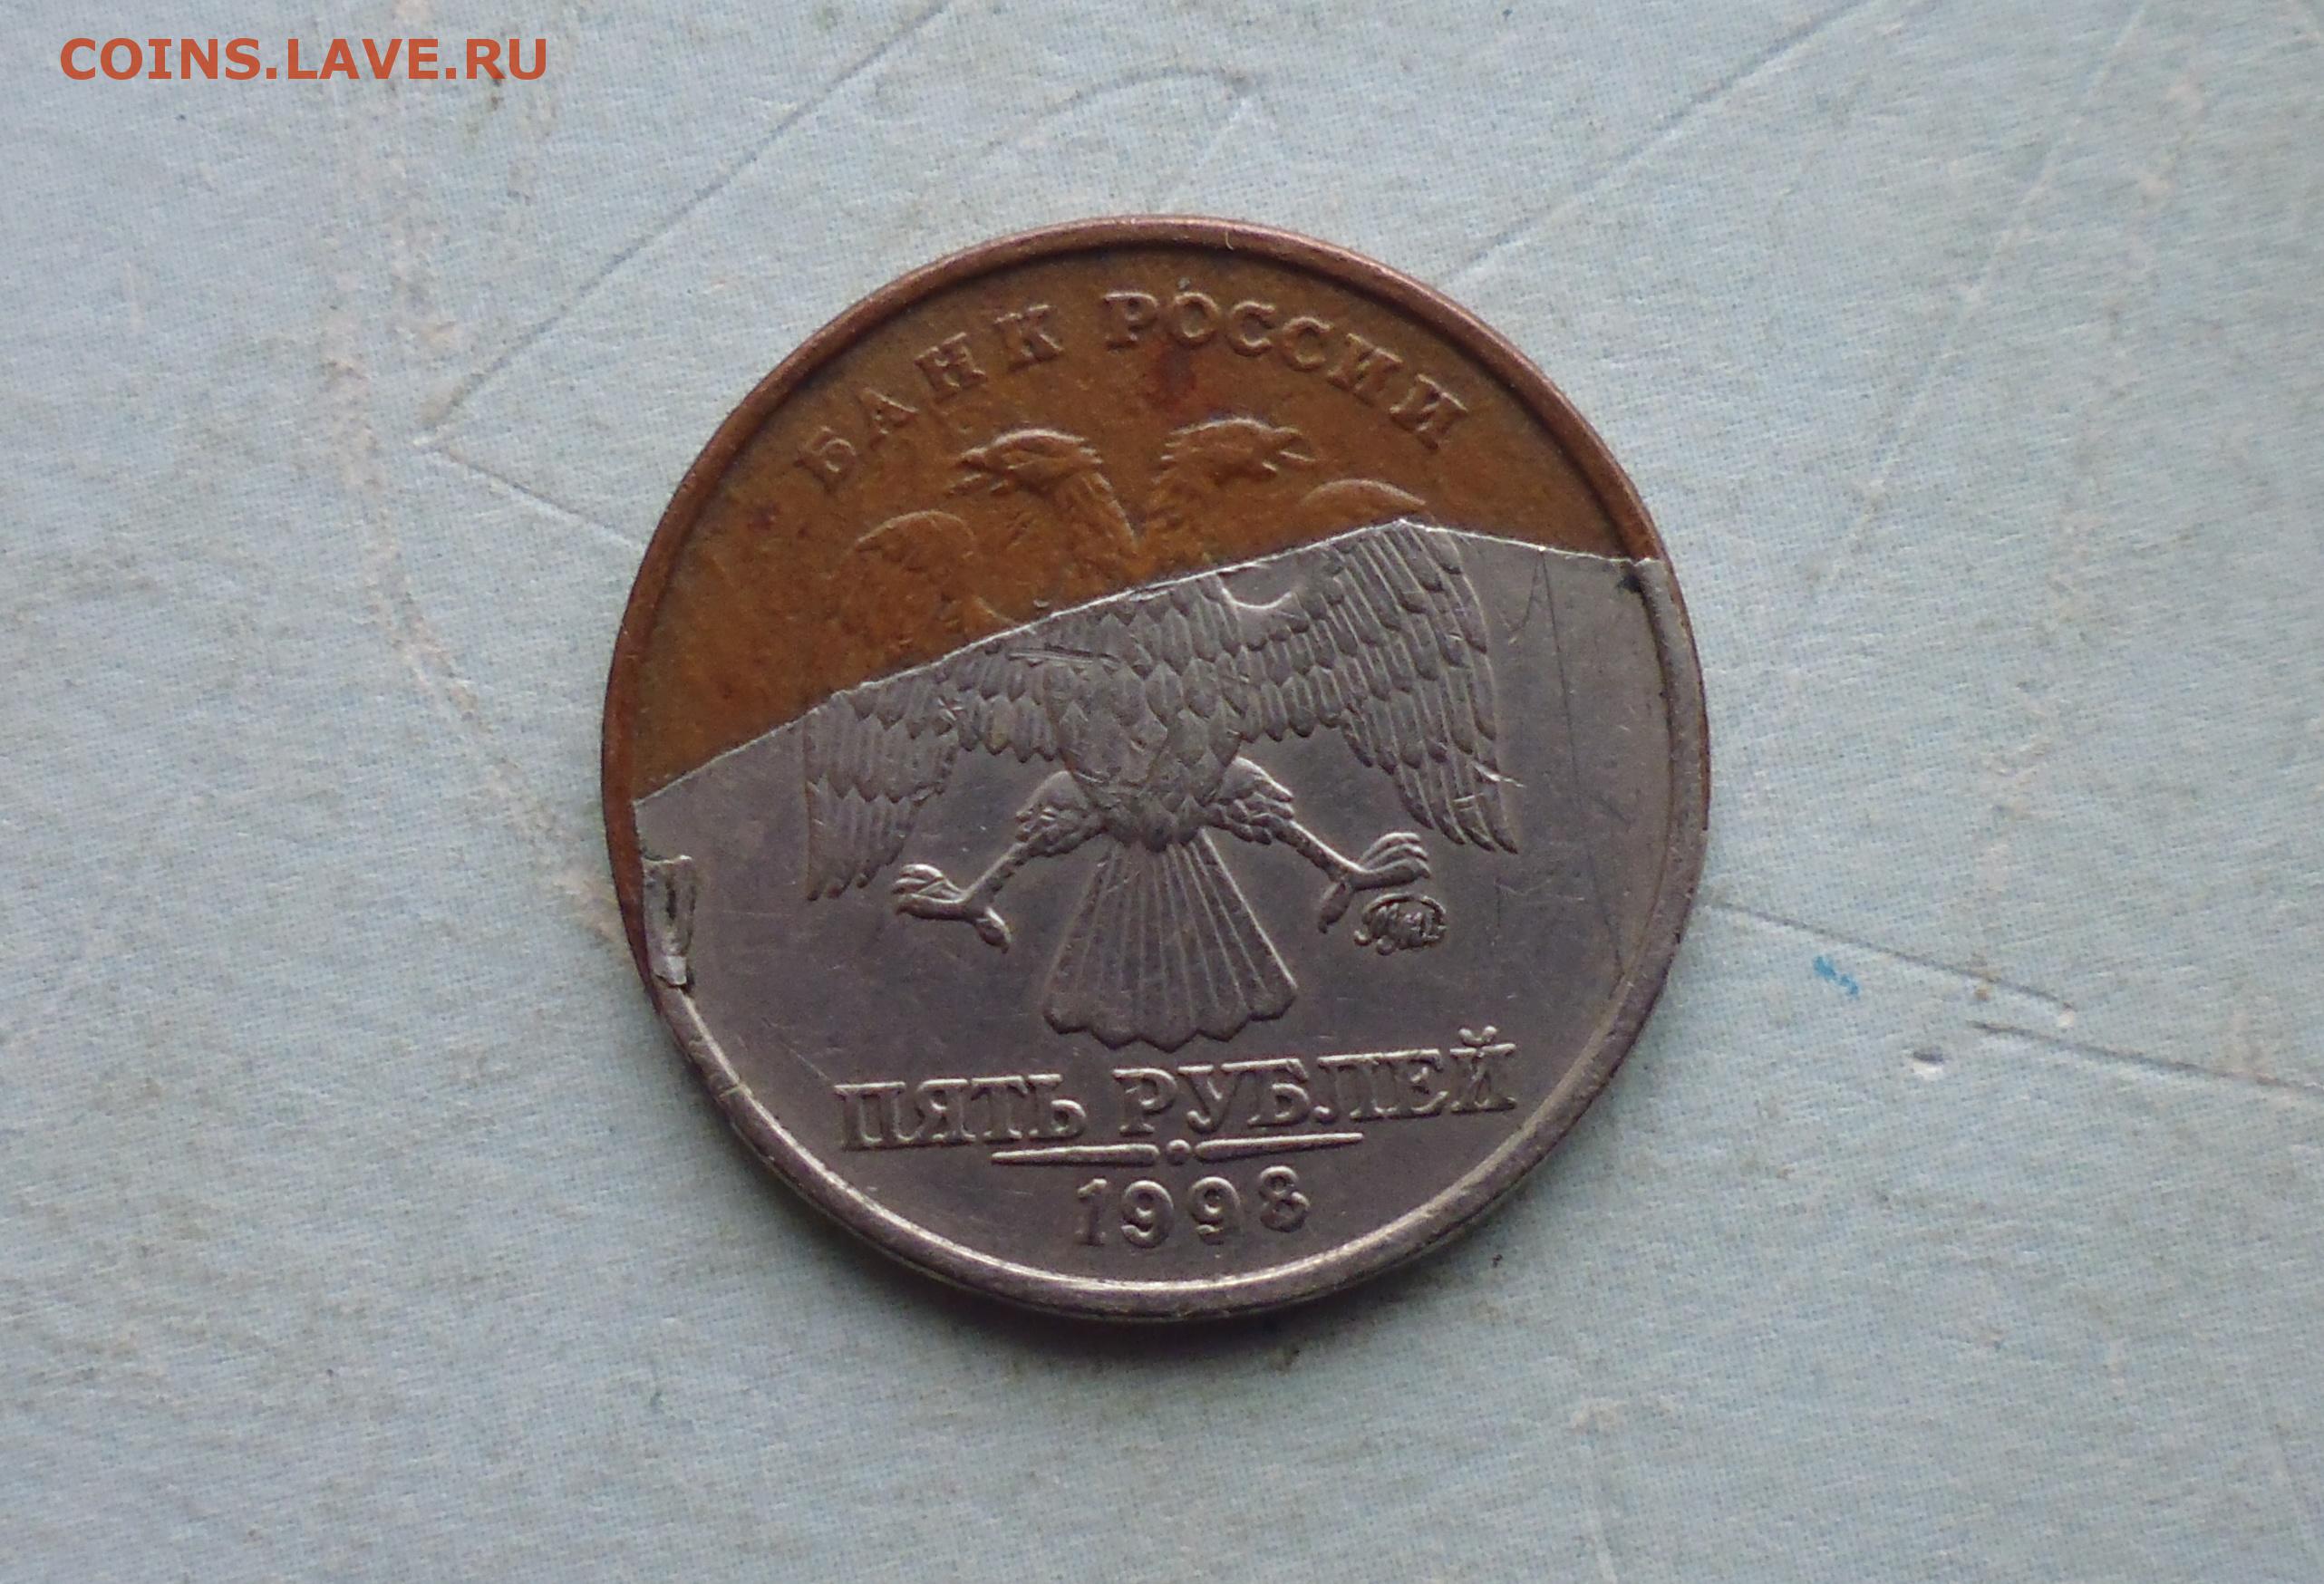 Количество монеты 5 рублей. Монета 5 рублей 1998 года. Монета 5 рублей 1998 года ММД. Медная 5 рублевая монета 1998 года. Монеты СПМД 1998 год 5 рублей.